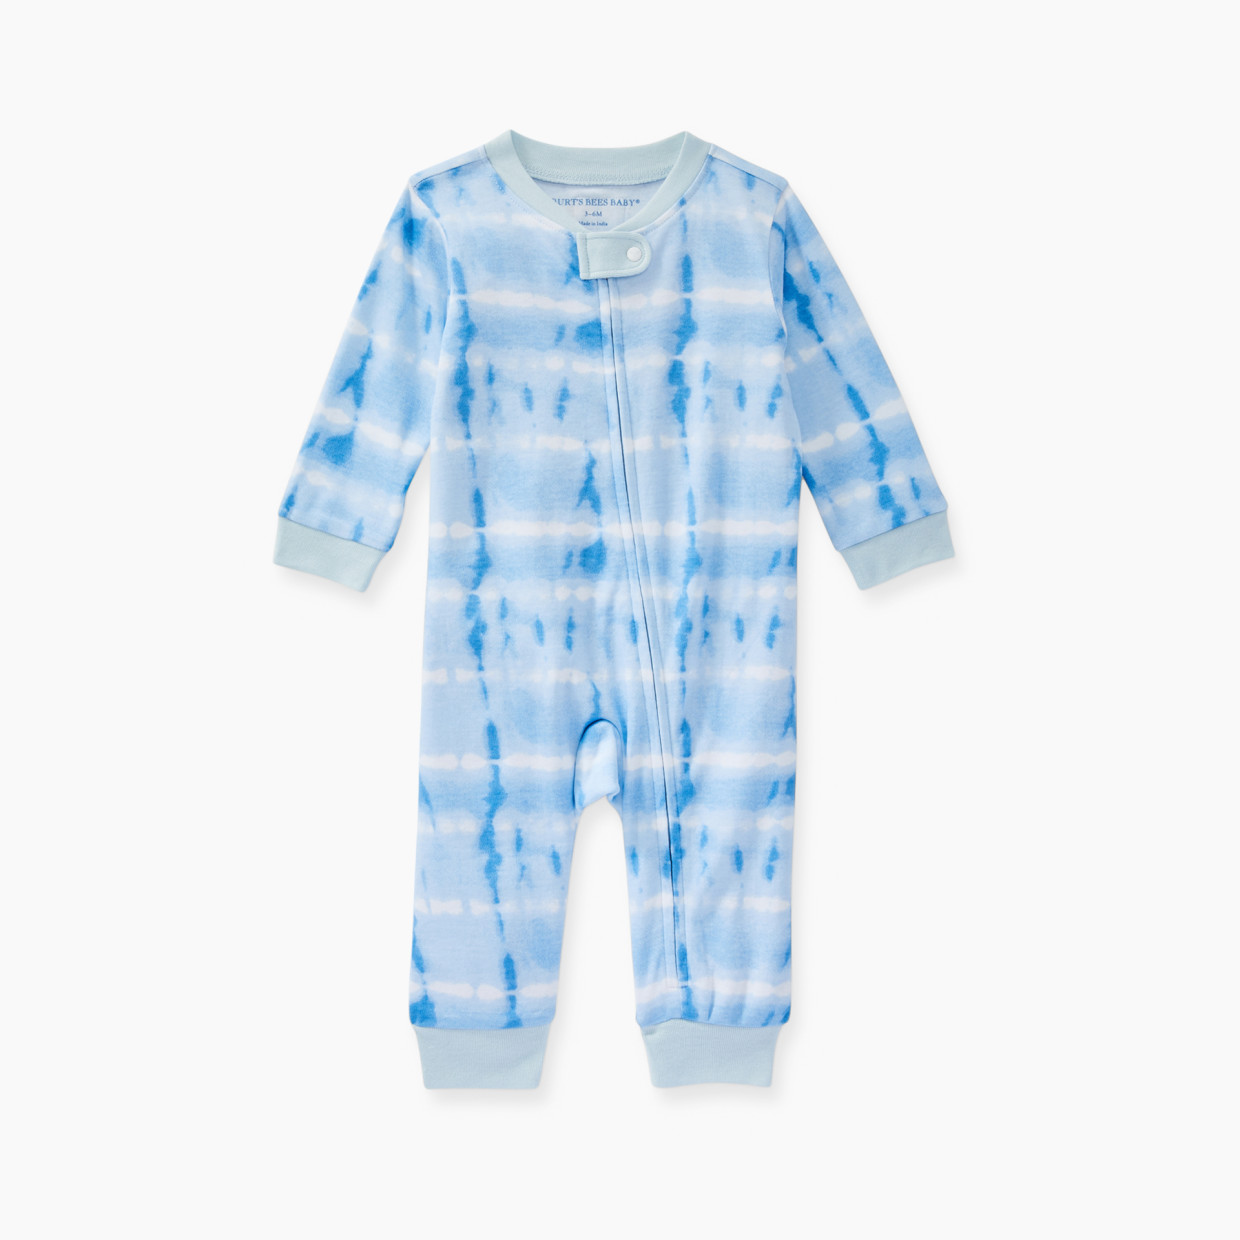 Burt's Bees Baby Organic Cotton Sleep & Play Pajamas - Sky Tie Dye, 0-3 Months.